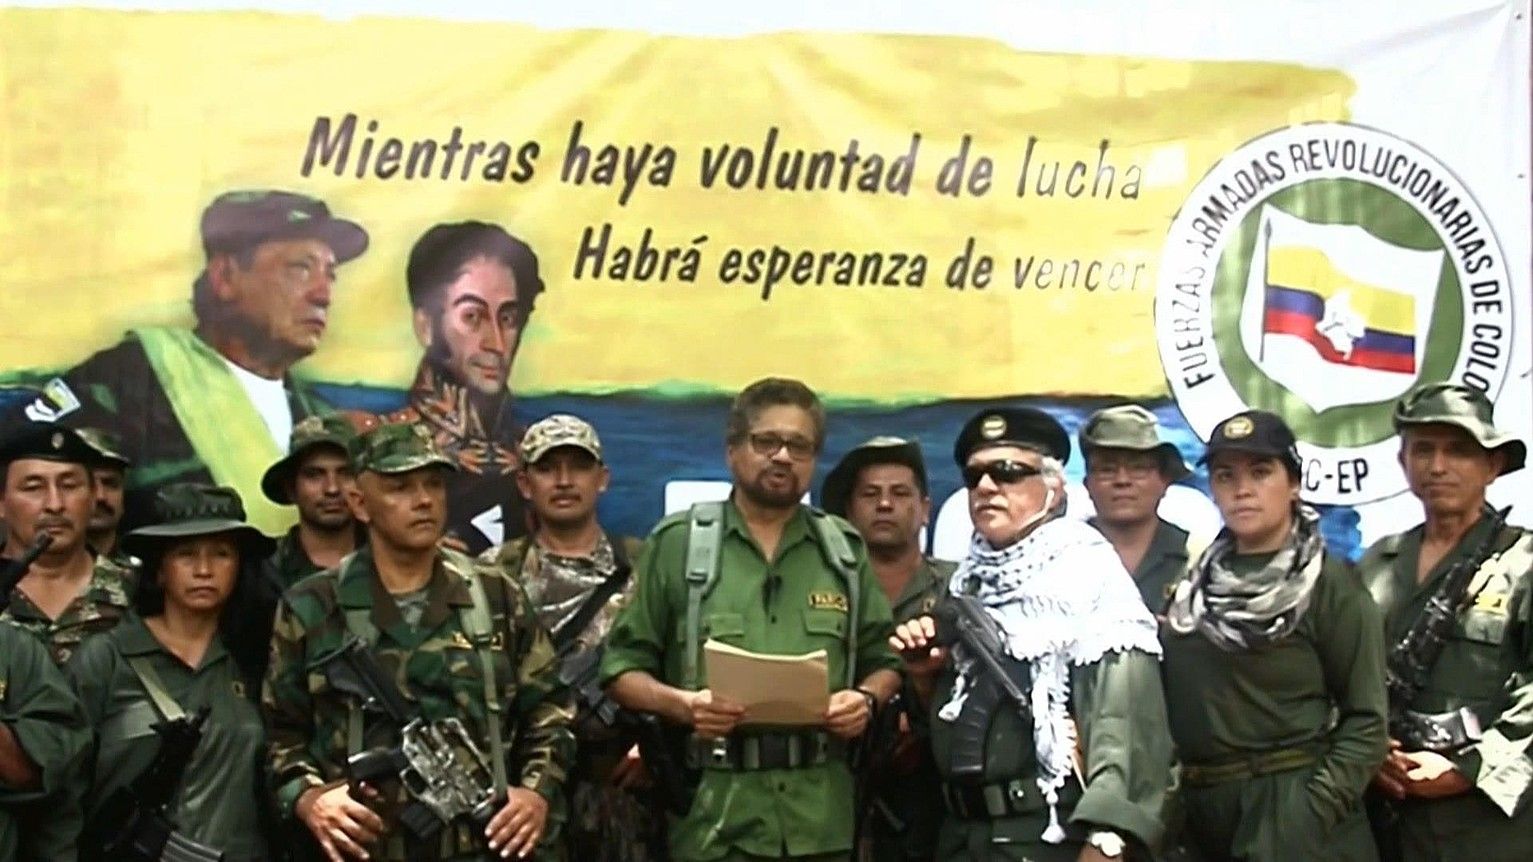 Ivan Marquez gerrillari ohiak adierazpen bat irakurri zuen, FARC siglekin sinatua, eta sarera igo zuten bideoa atzo goizaldean. EFE.